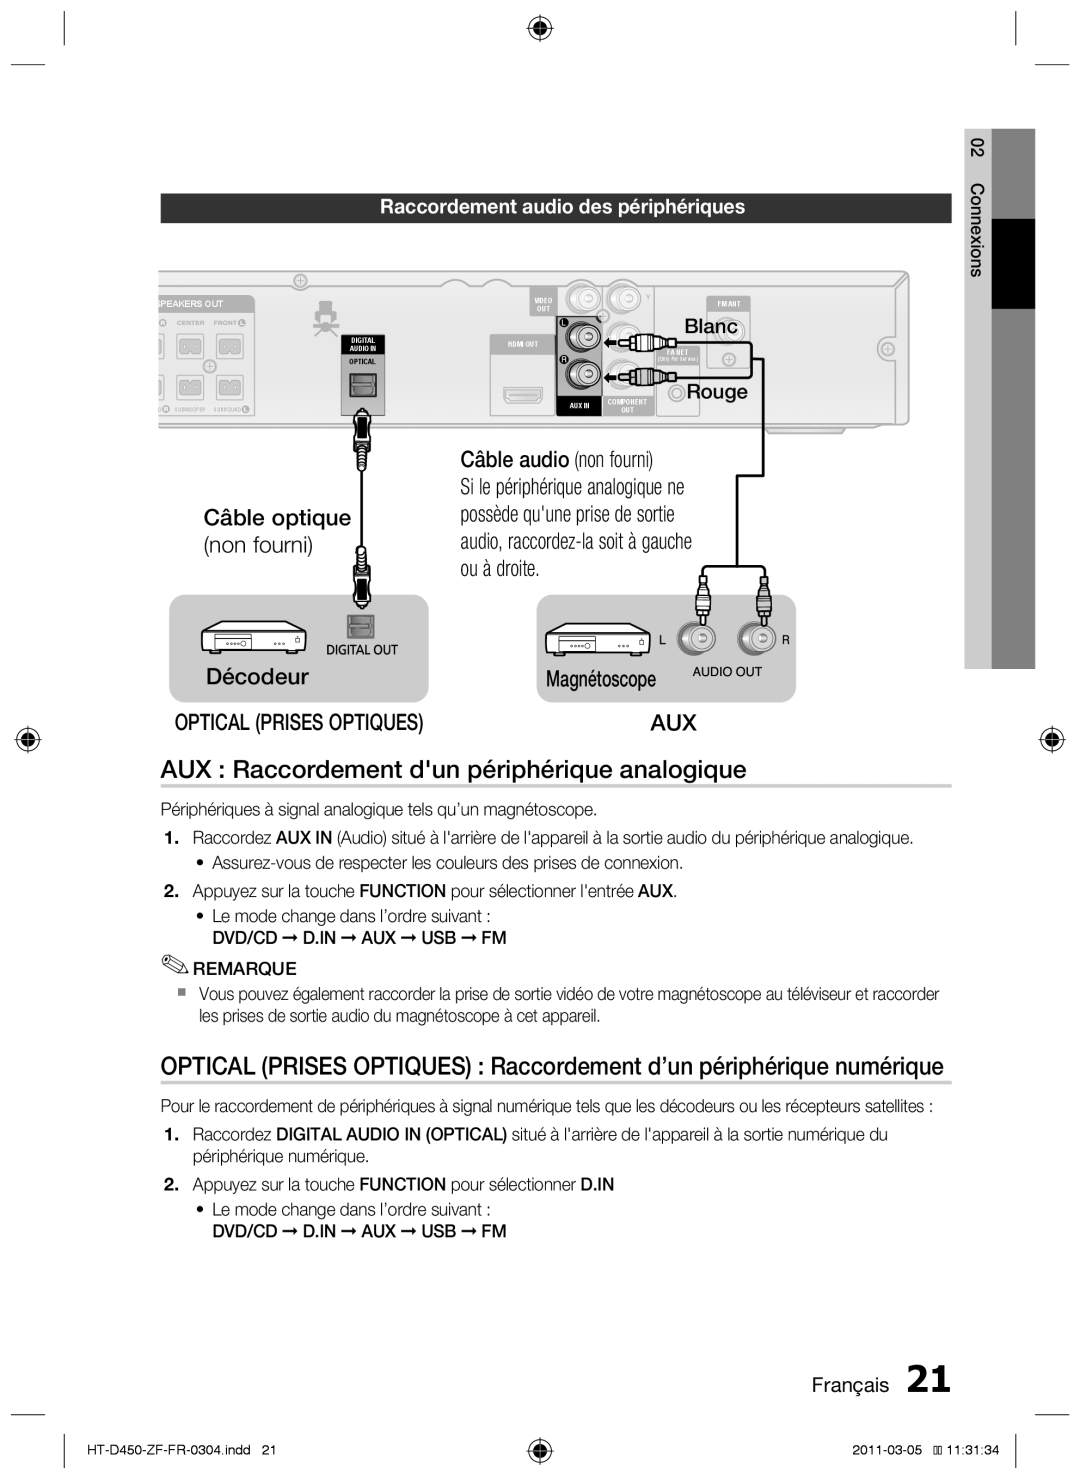 Samsung HT-D450 AUX : Raccordement dun périphérique analogique, Câble optique non fourni Décodeur, Câble audio non fourni 